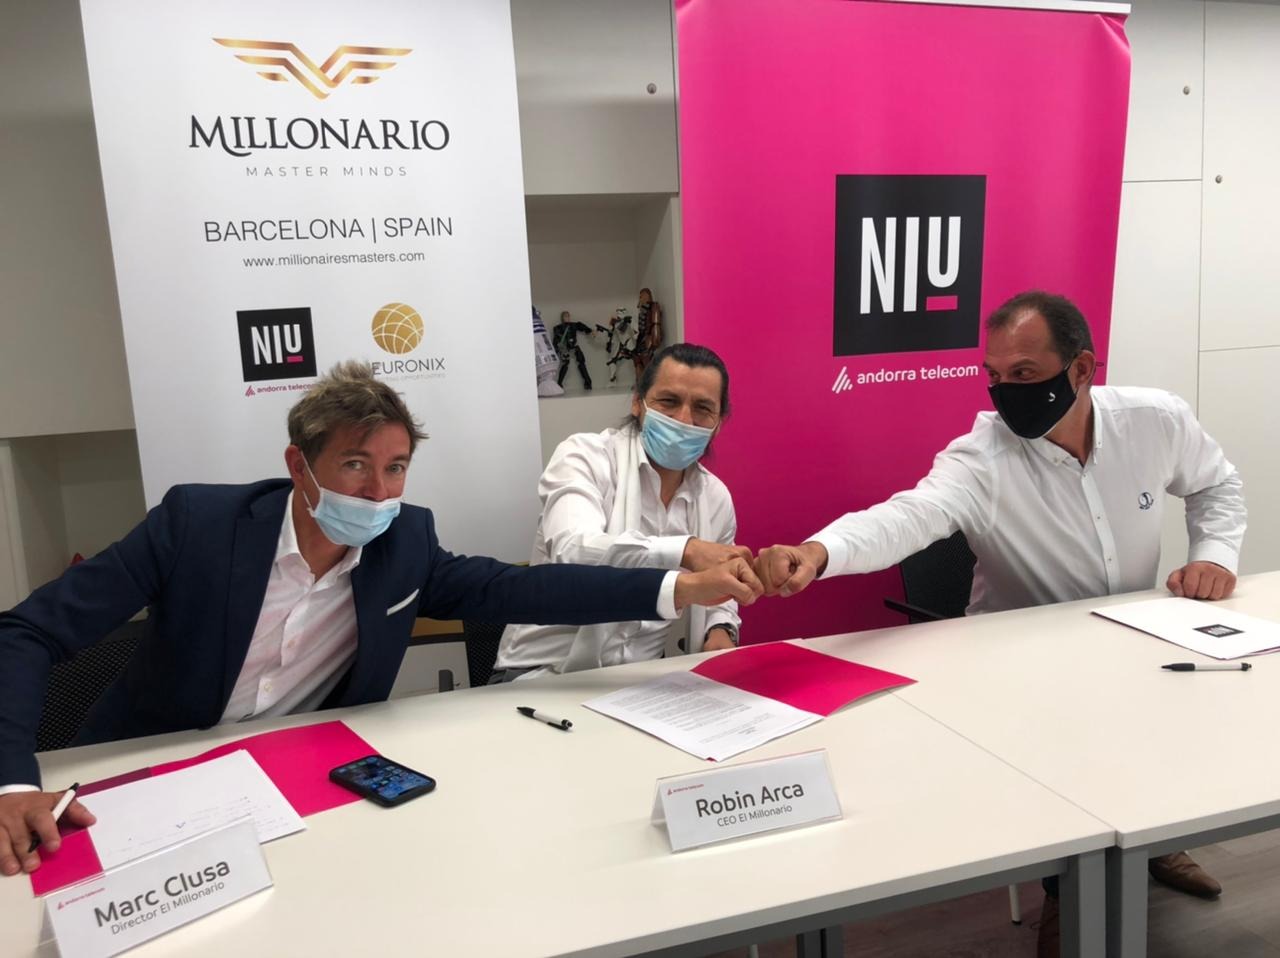 El Niu d’Andorra Telecom participa a la cimera del negoci internacional Millonario Master Minds